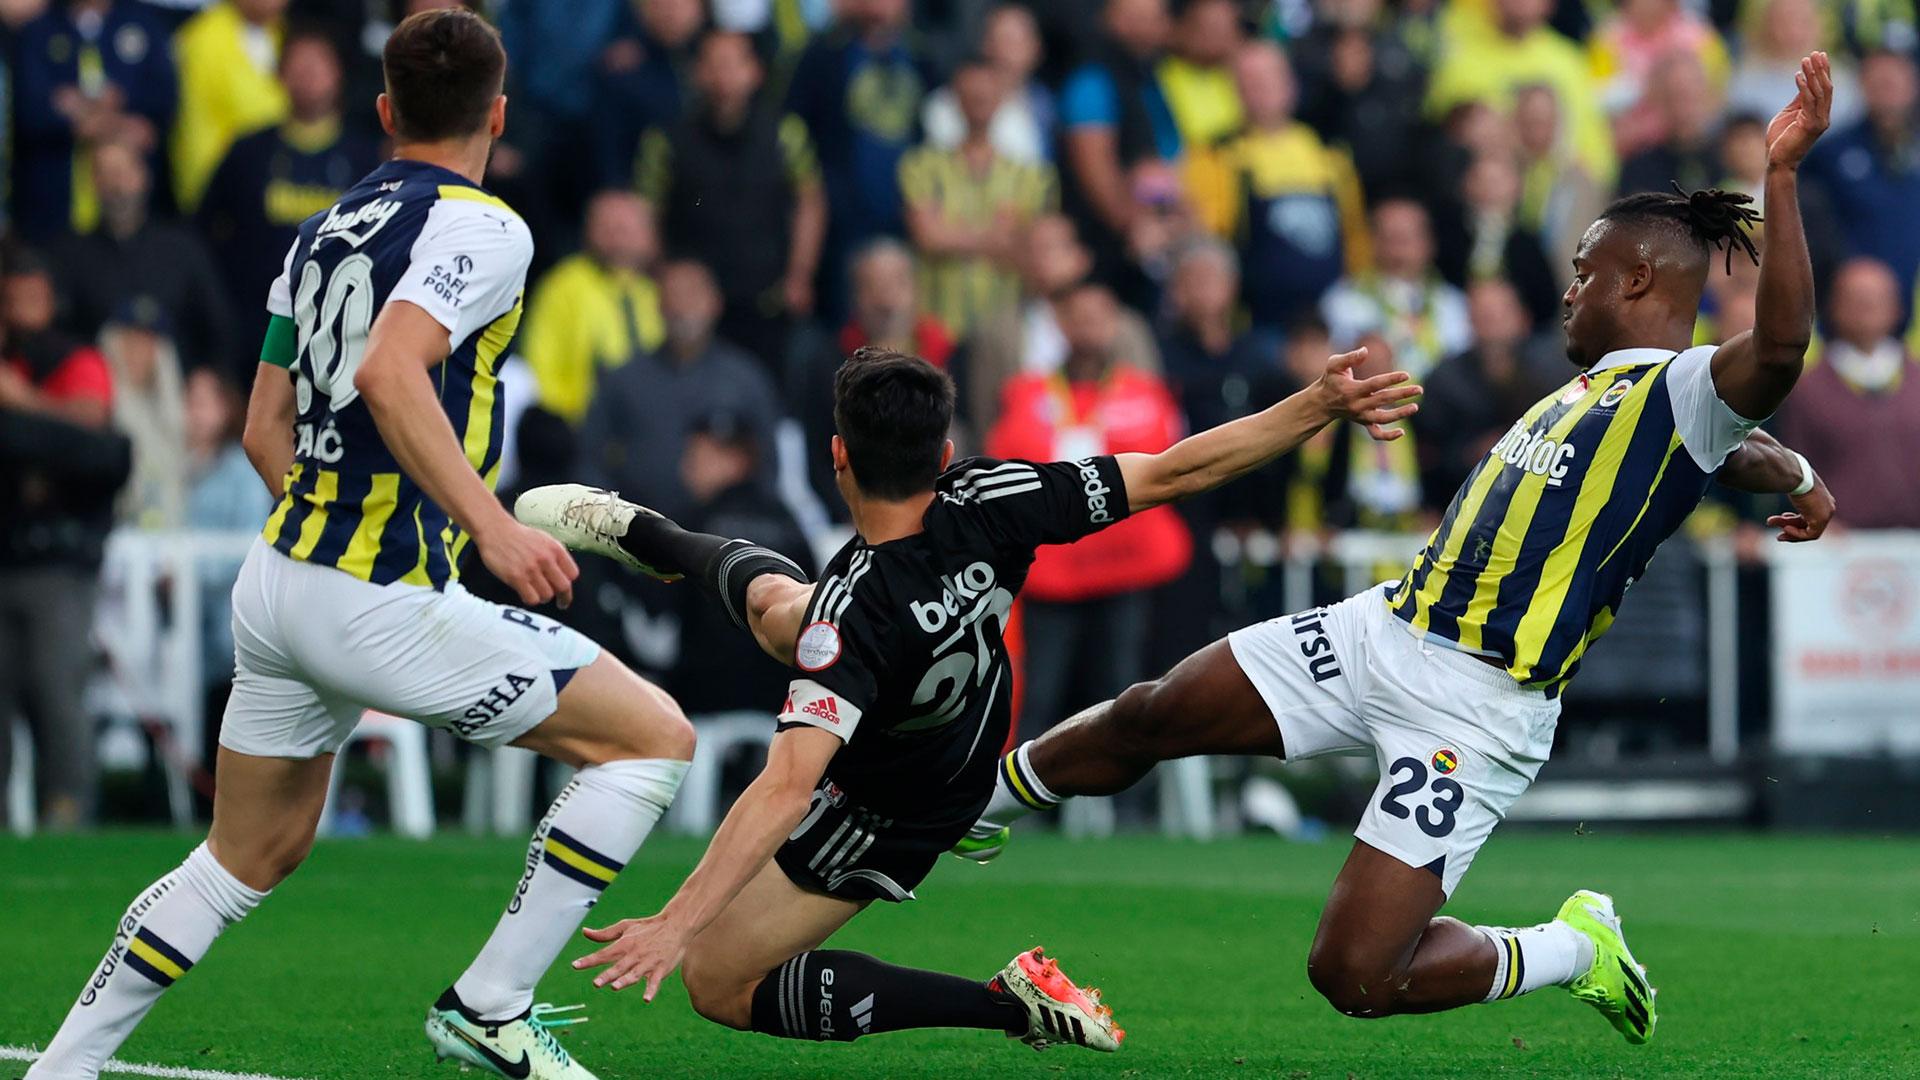 VIDEO | Süper Lig Highlights: Fenerbahce vs Besiktas